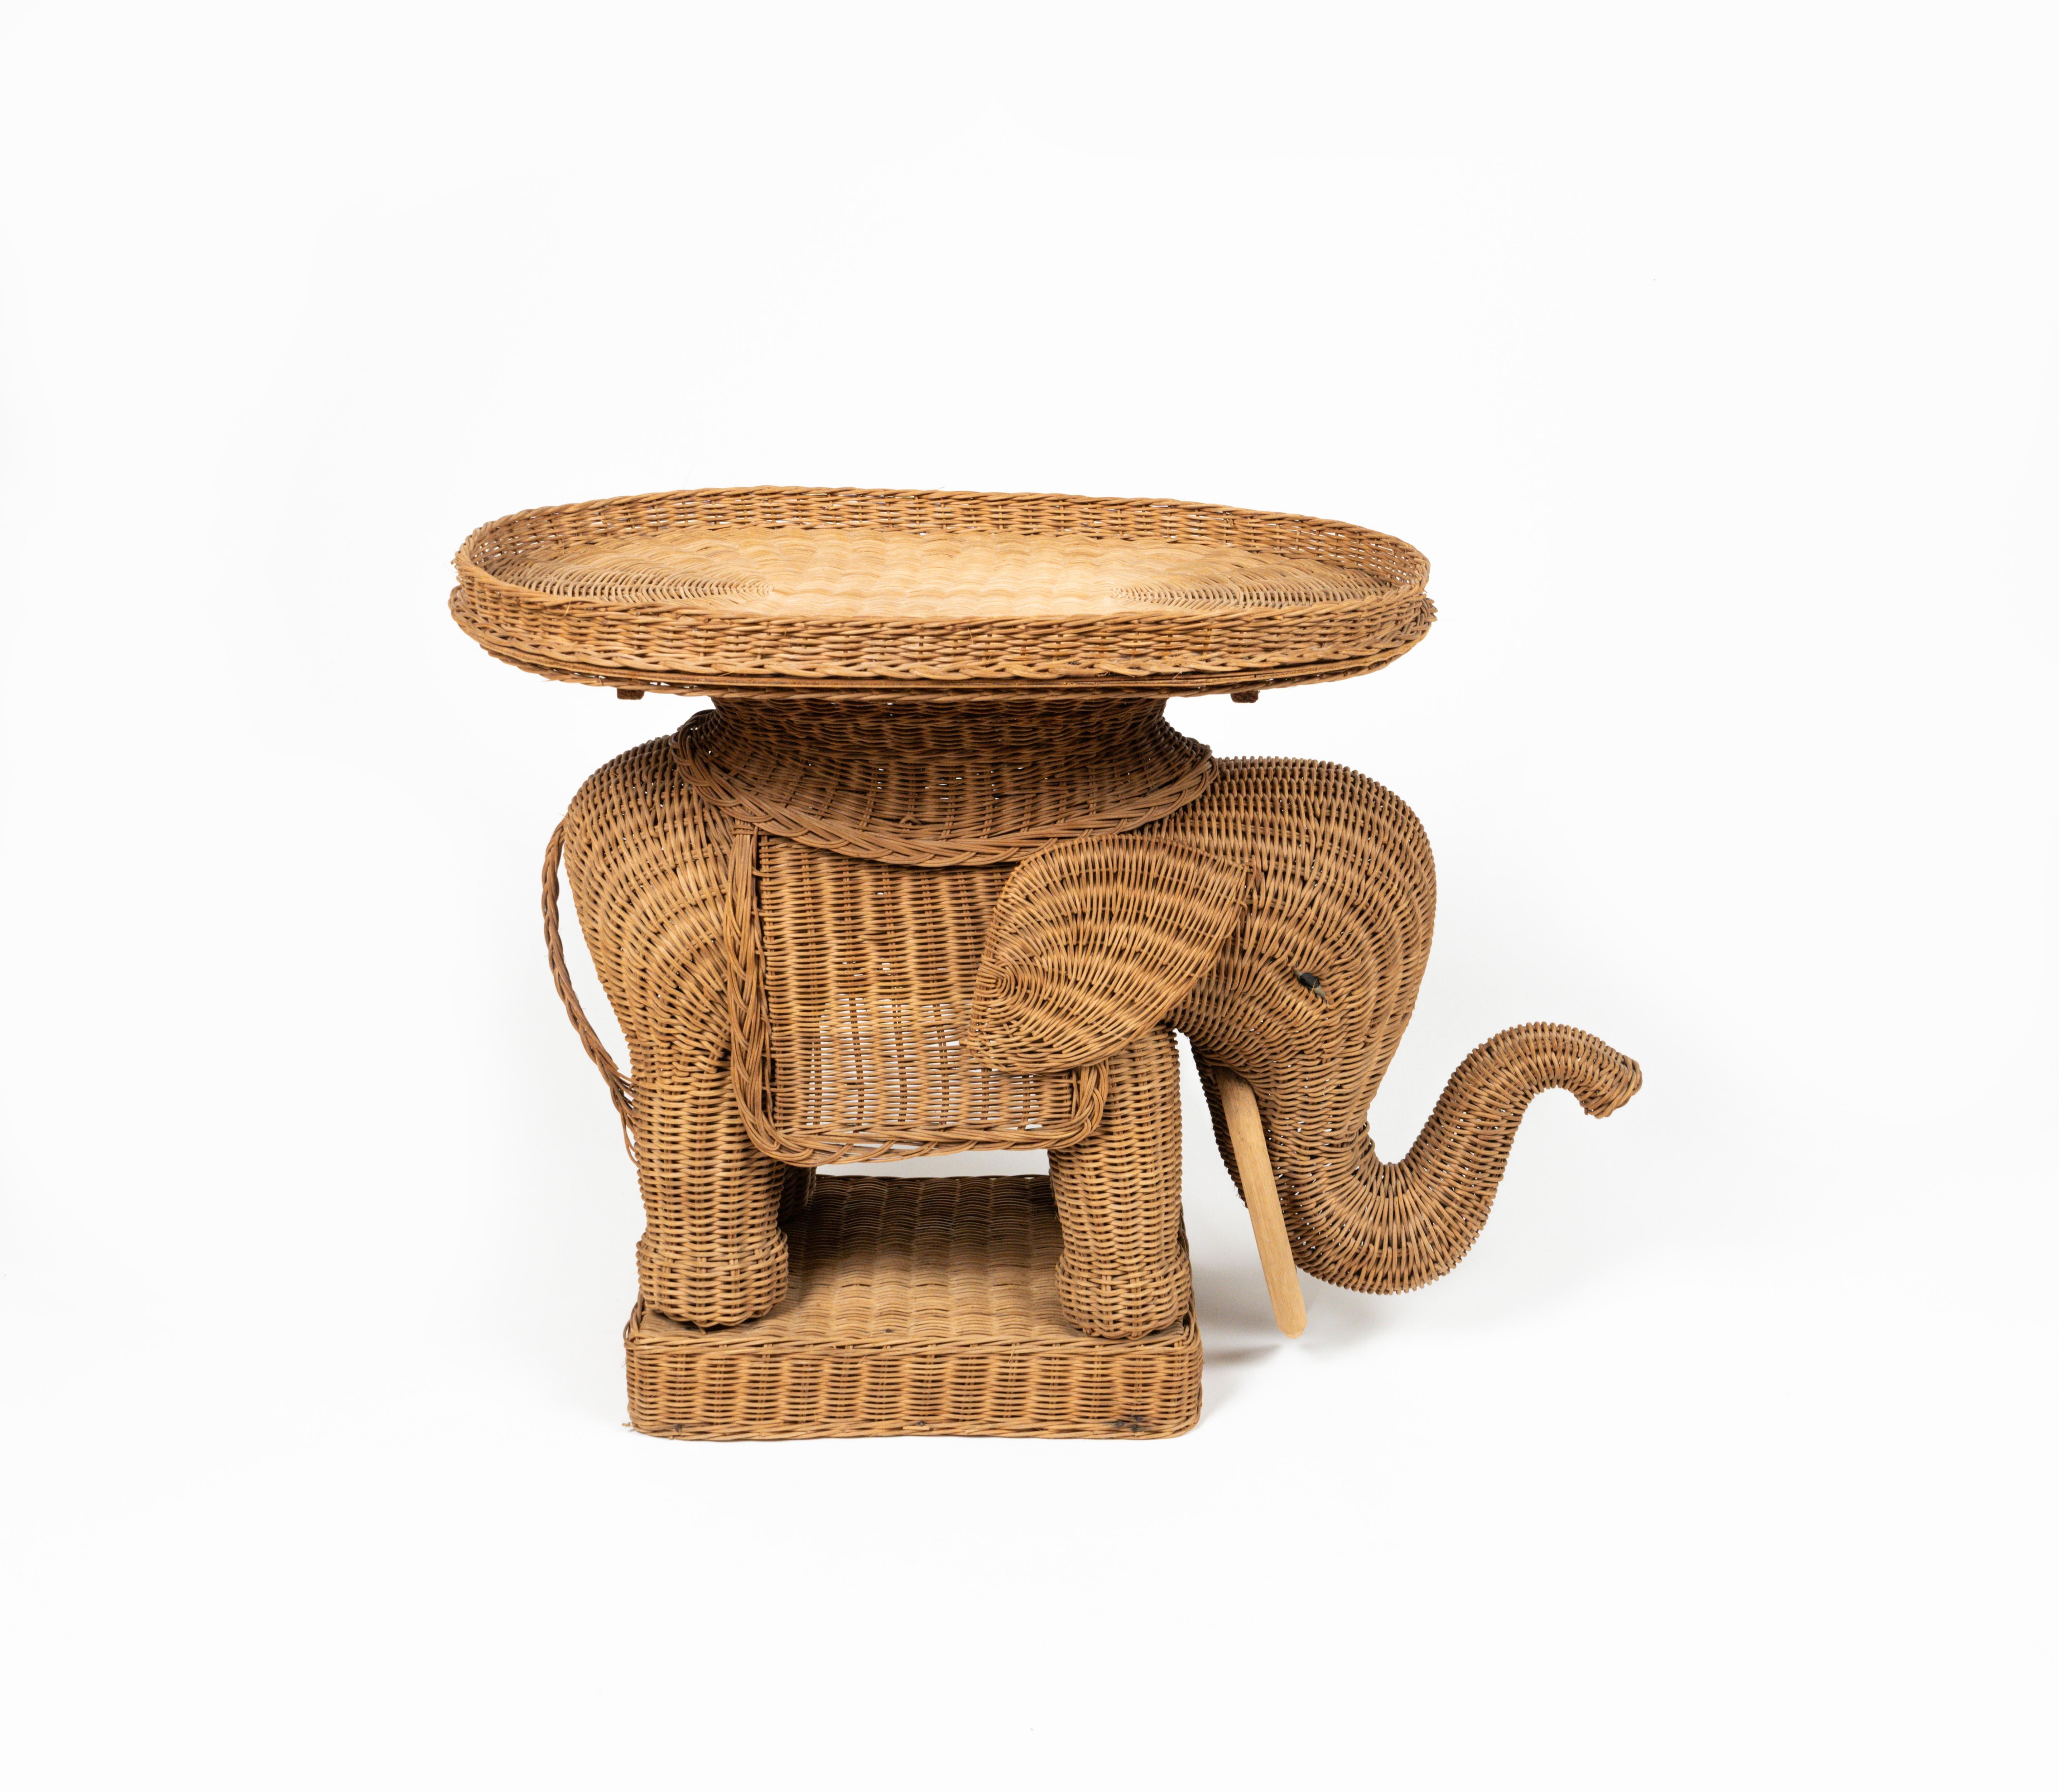 Table basse / table d'appoint en forme d'éléphant en rotin tressé à la main avec des défenses en bois dans le style de Vivai Del Sud.

Il est également doté d'un plateau amovible en osier.

Fabriqué en Italie dans les années 1960.

Vivai del sud,